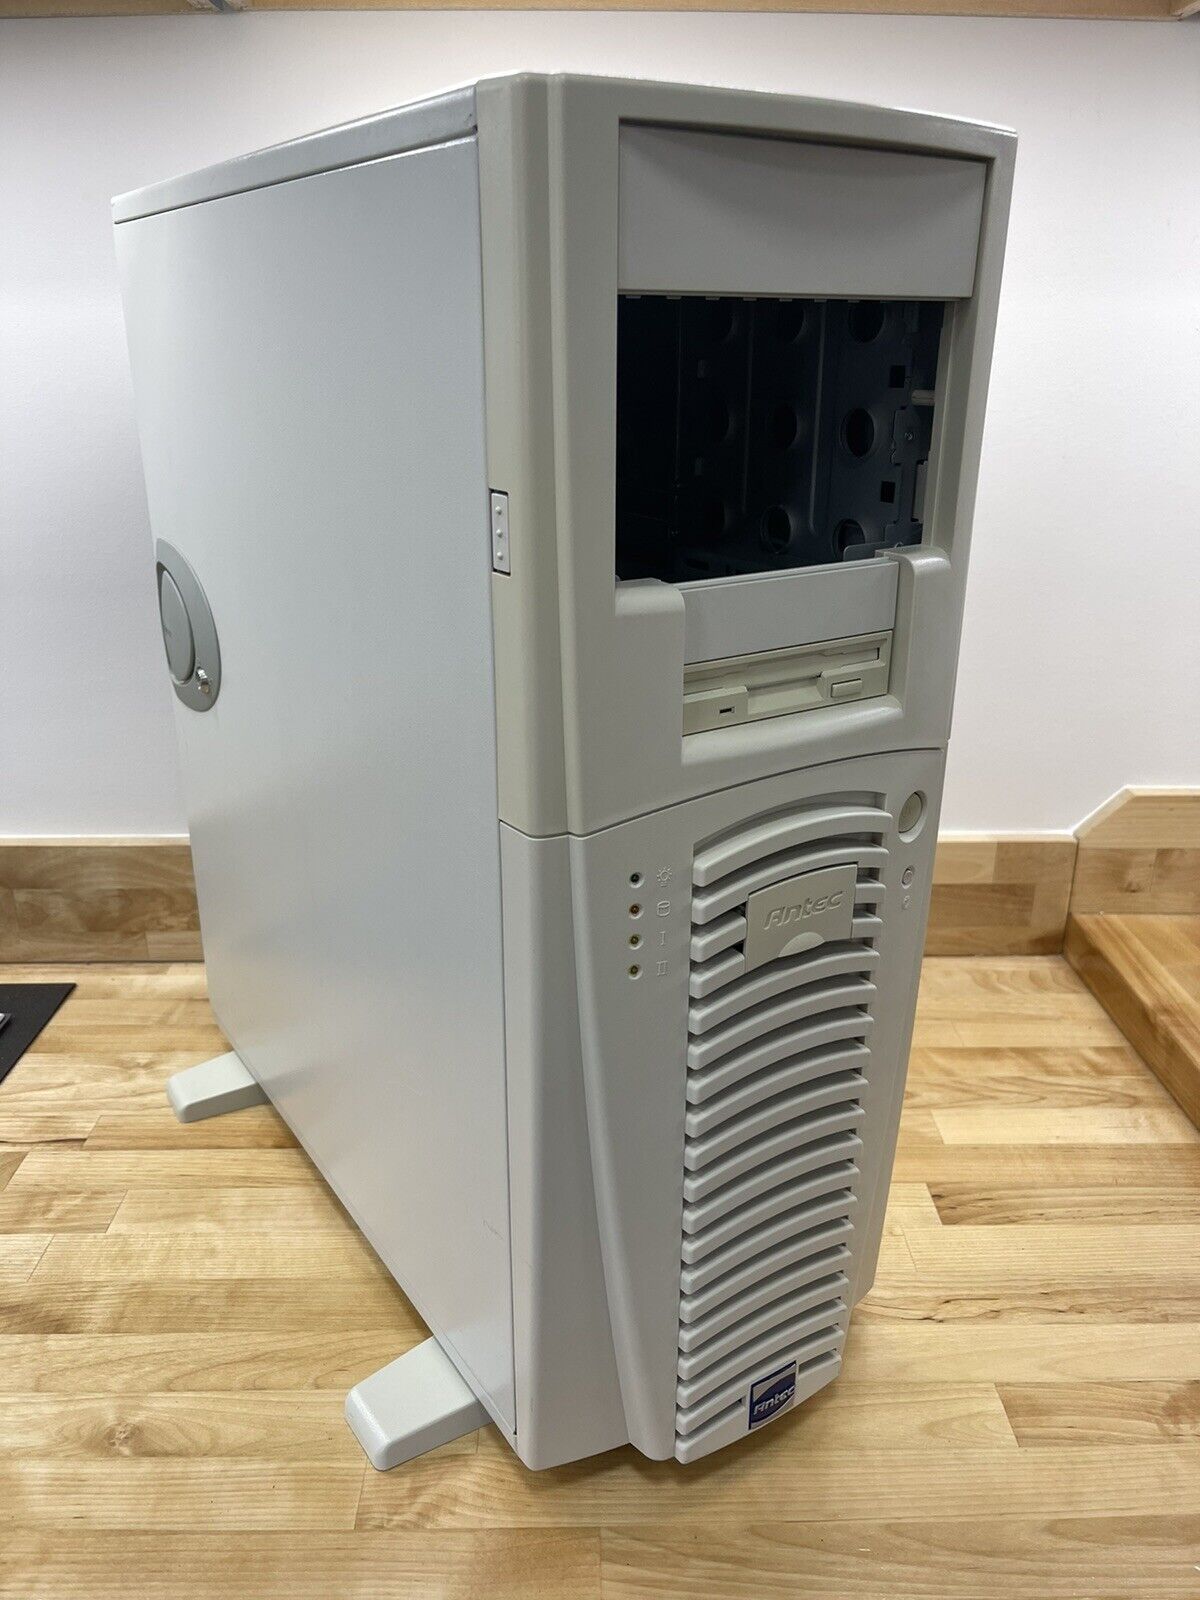 Vintage Antec Performance Tower Pentium III 4 Era Beige Retro Gaming PC ATX Case